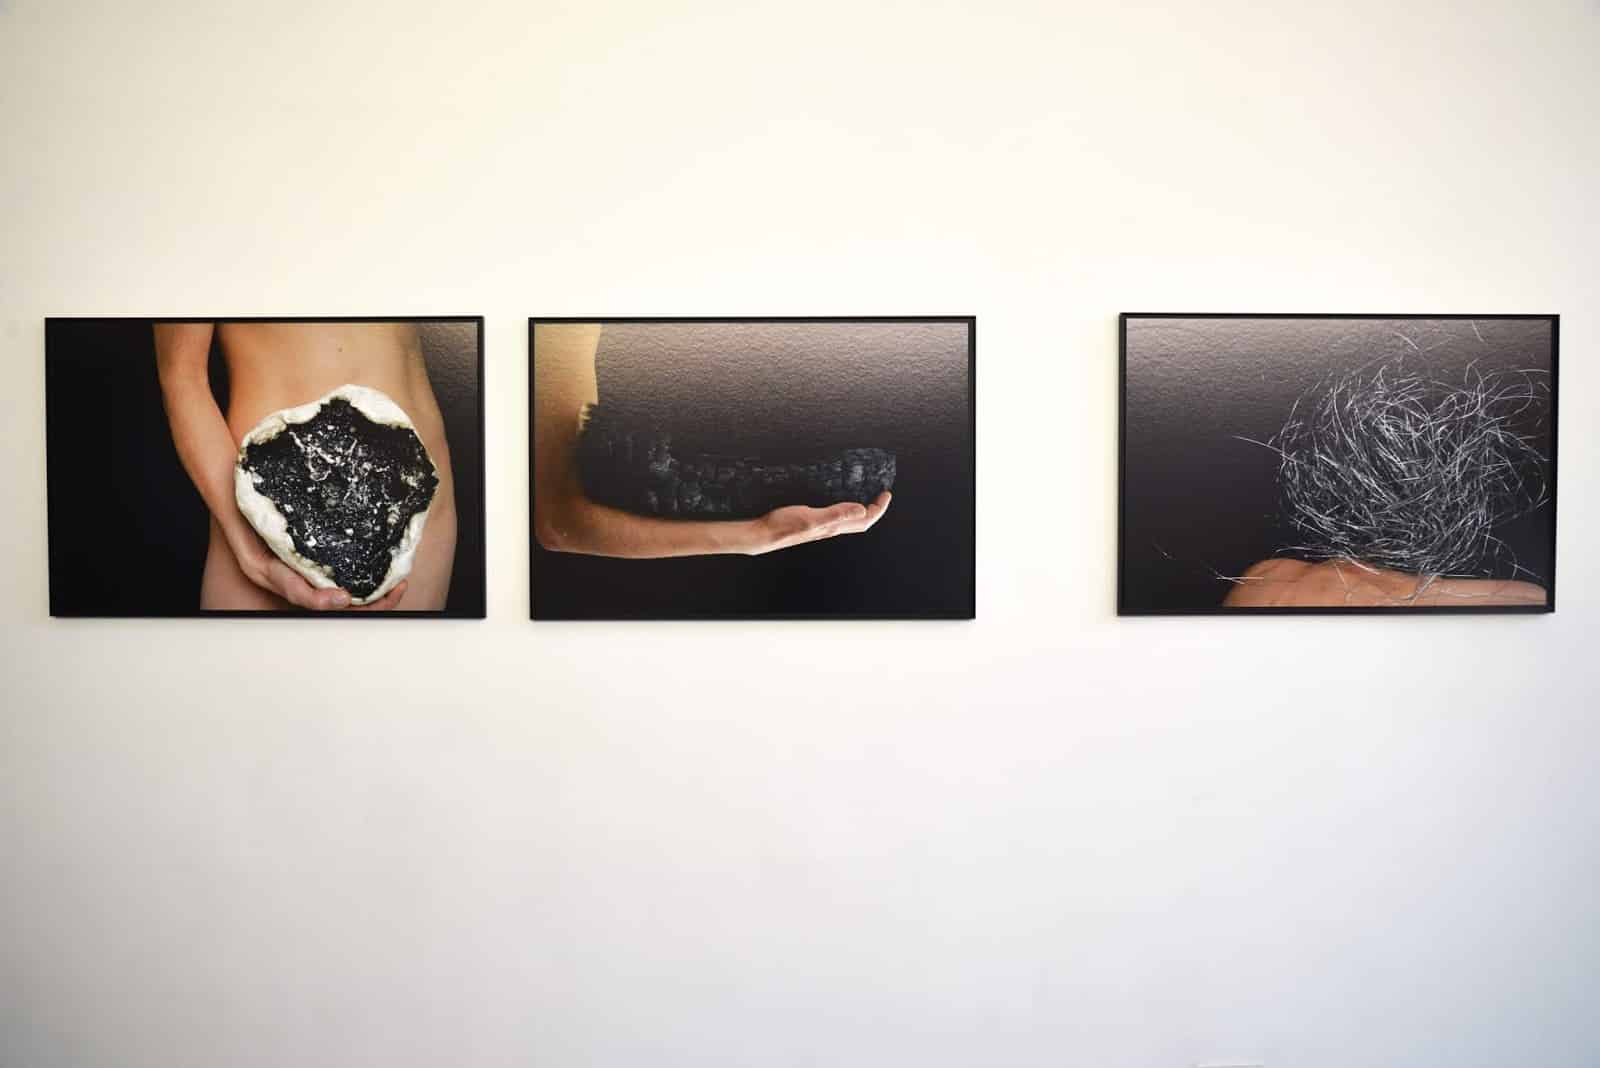 Les présents, 2016, 60x 90 cm, Tirages pigmentaires sur papier Hahnemühle, Digigraphie® © Laurence Nicola